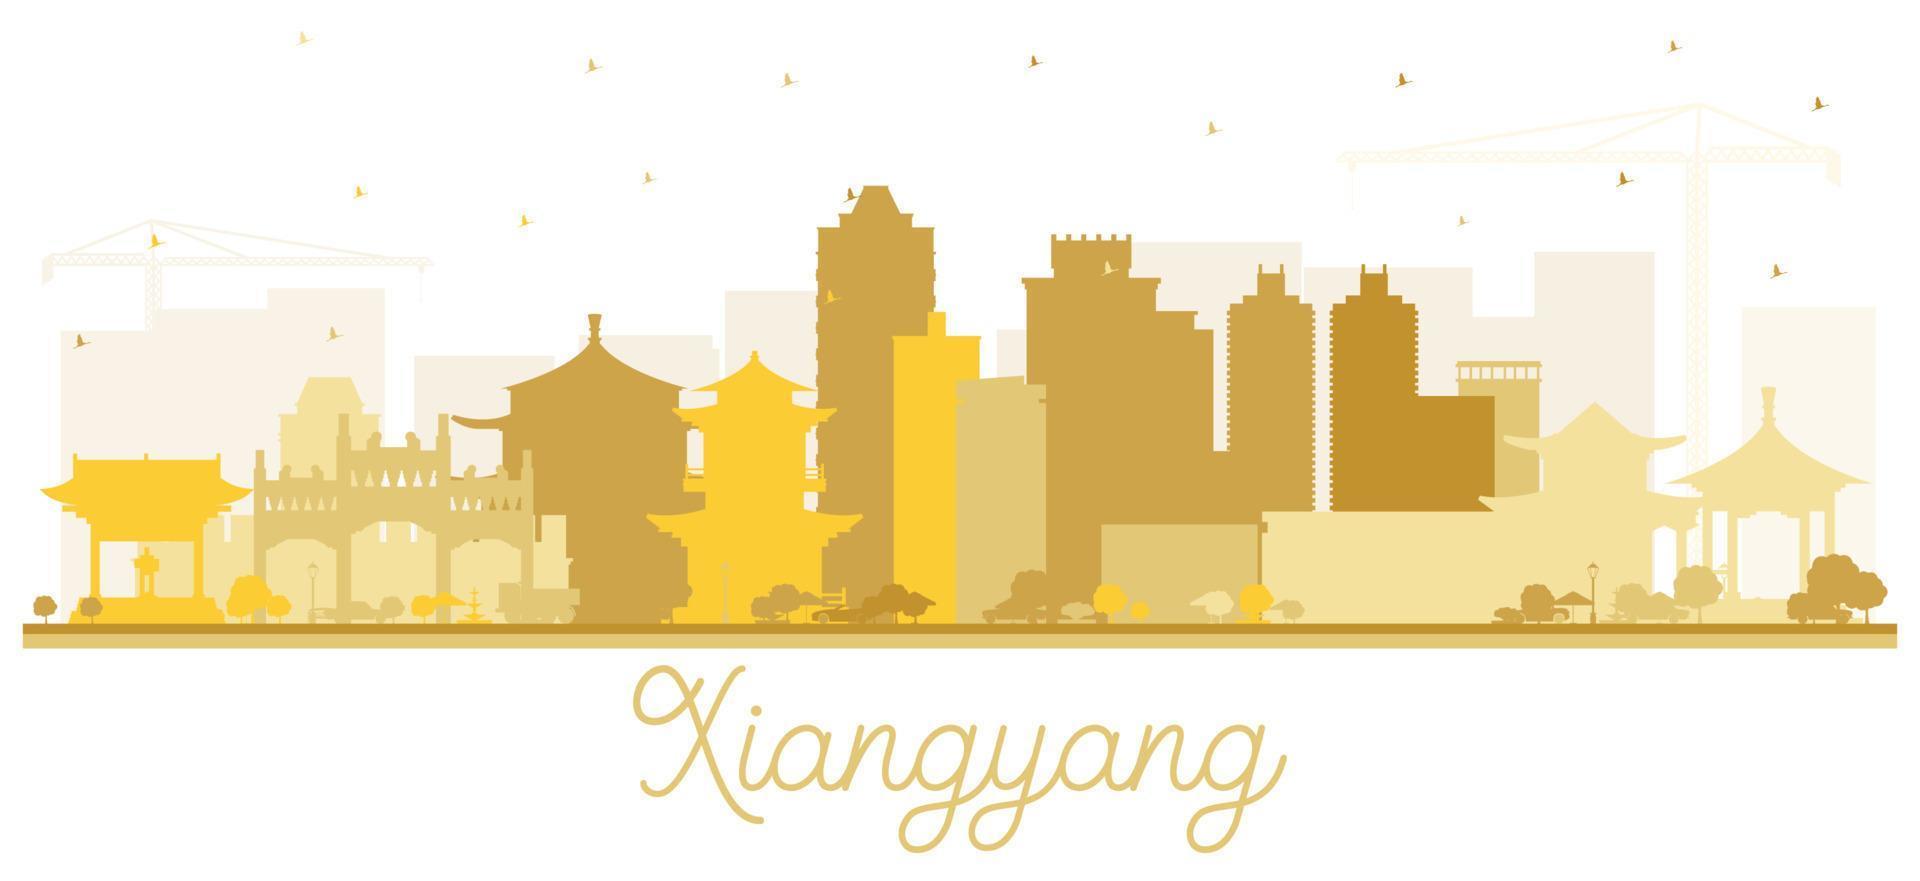 xiangyang china city skyline silhouette mit goldenen gebäuden isoliert auf weiß. vektor